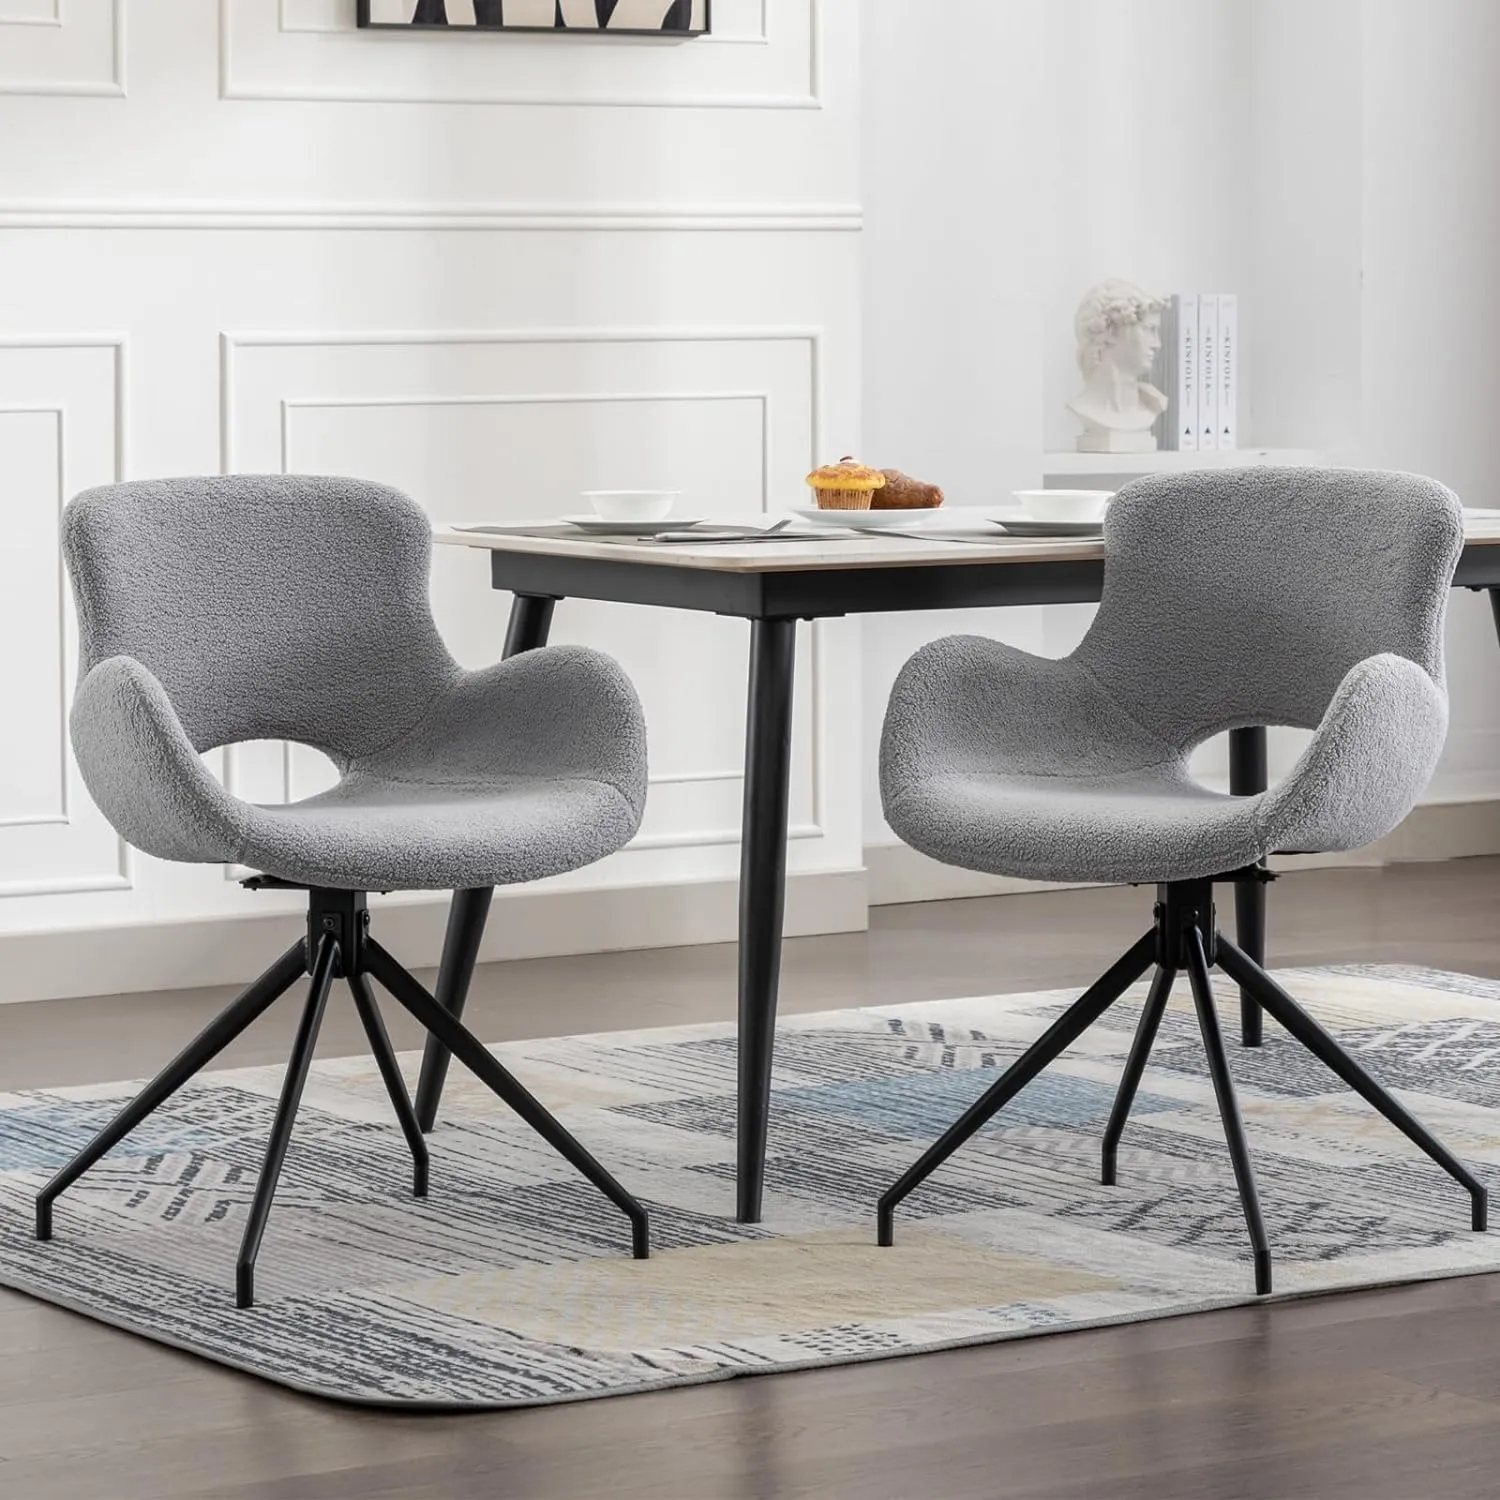 Swivel dineren accentstoelen set van 2, moderne boucle eetkamerstoel gestoffeerde fuzzy stoel met armen zwarte metalen benen voor woonkamer keuken slaapkamer kantoor